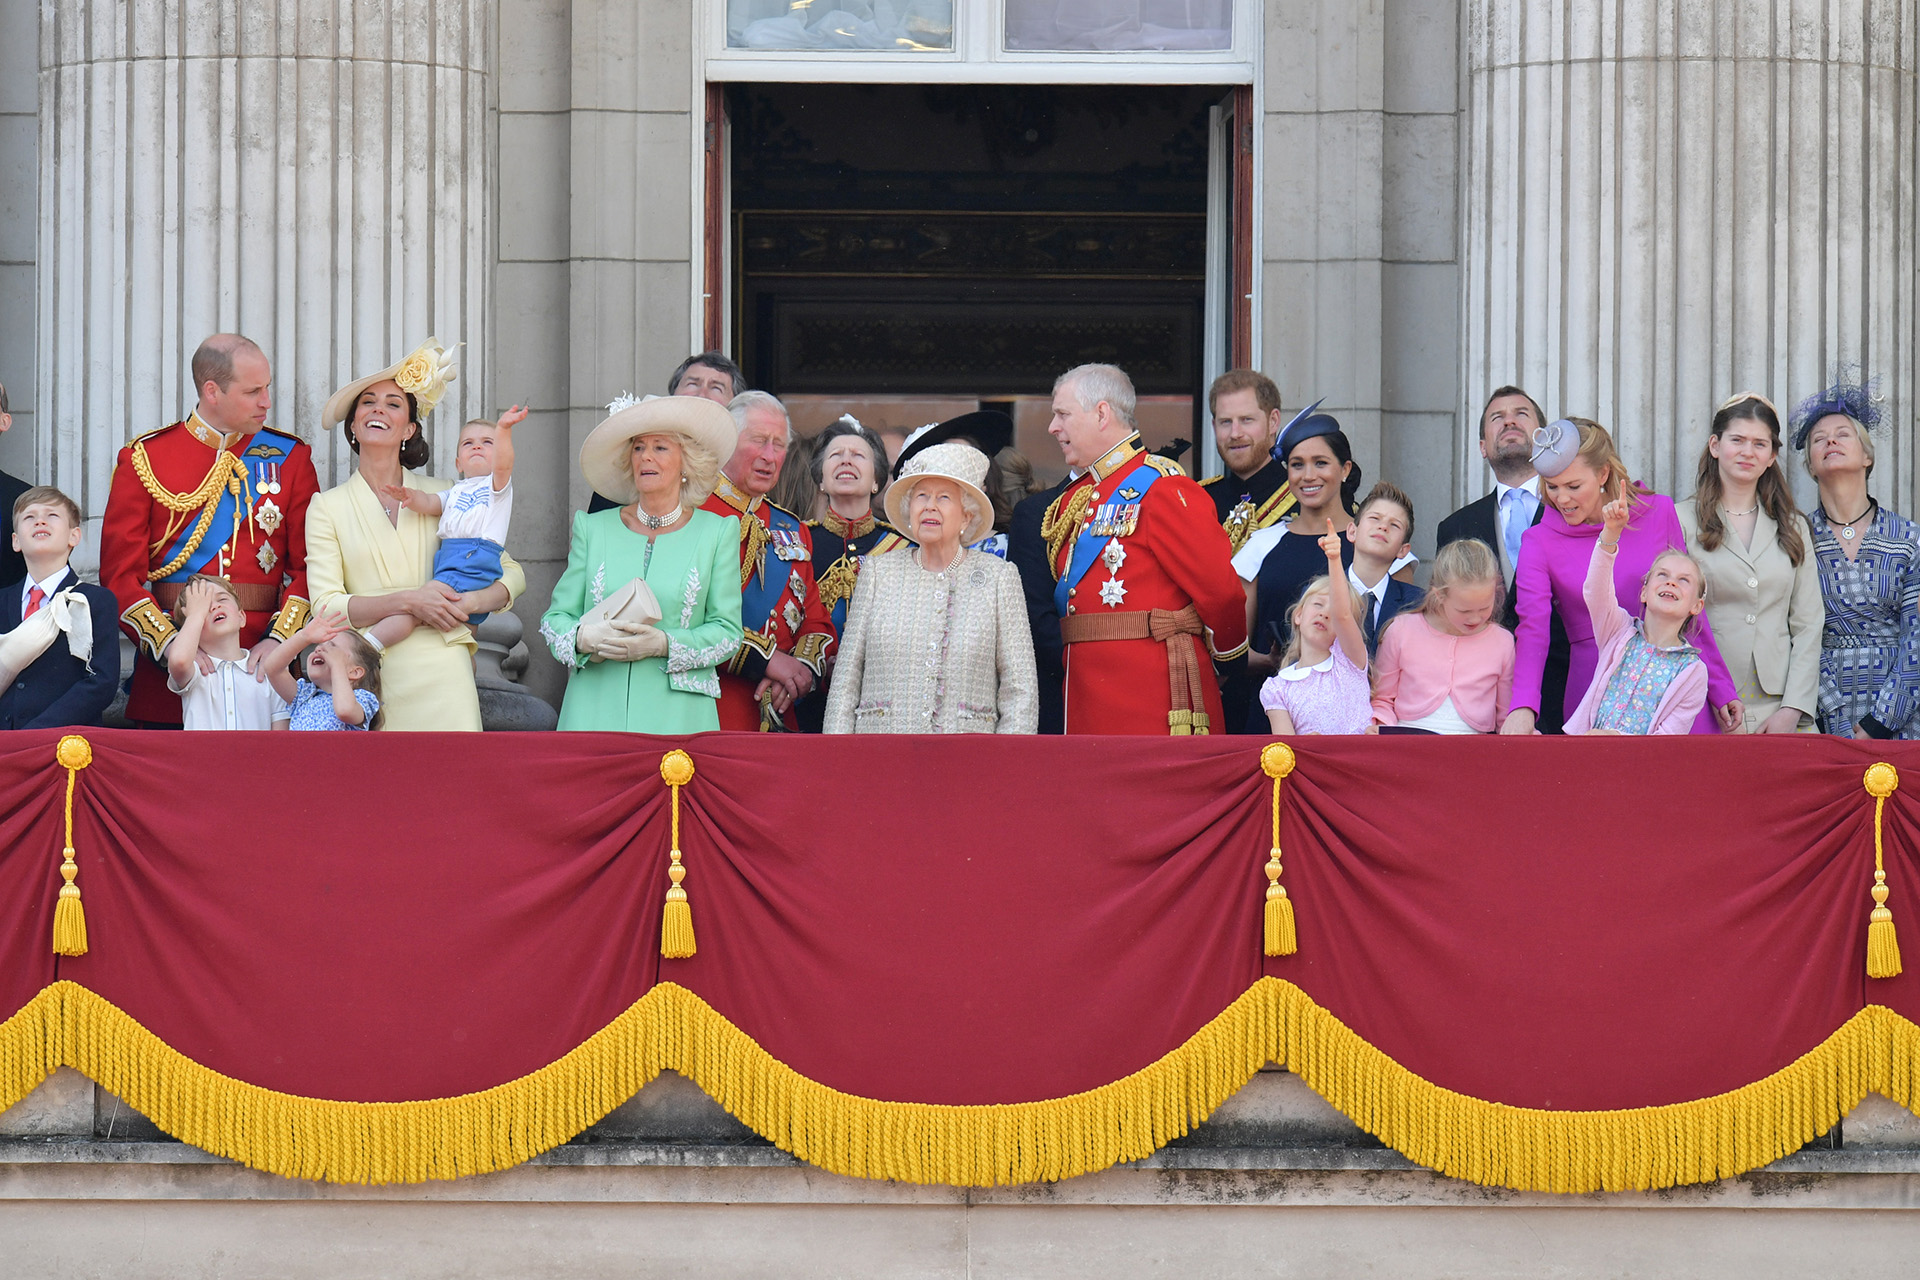 Se espera la presencia de toda la familia real, incluido Harry y Meghan.(Foto por Daniel LEAL-OLIVAS / AFP)